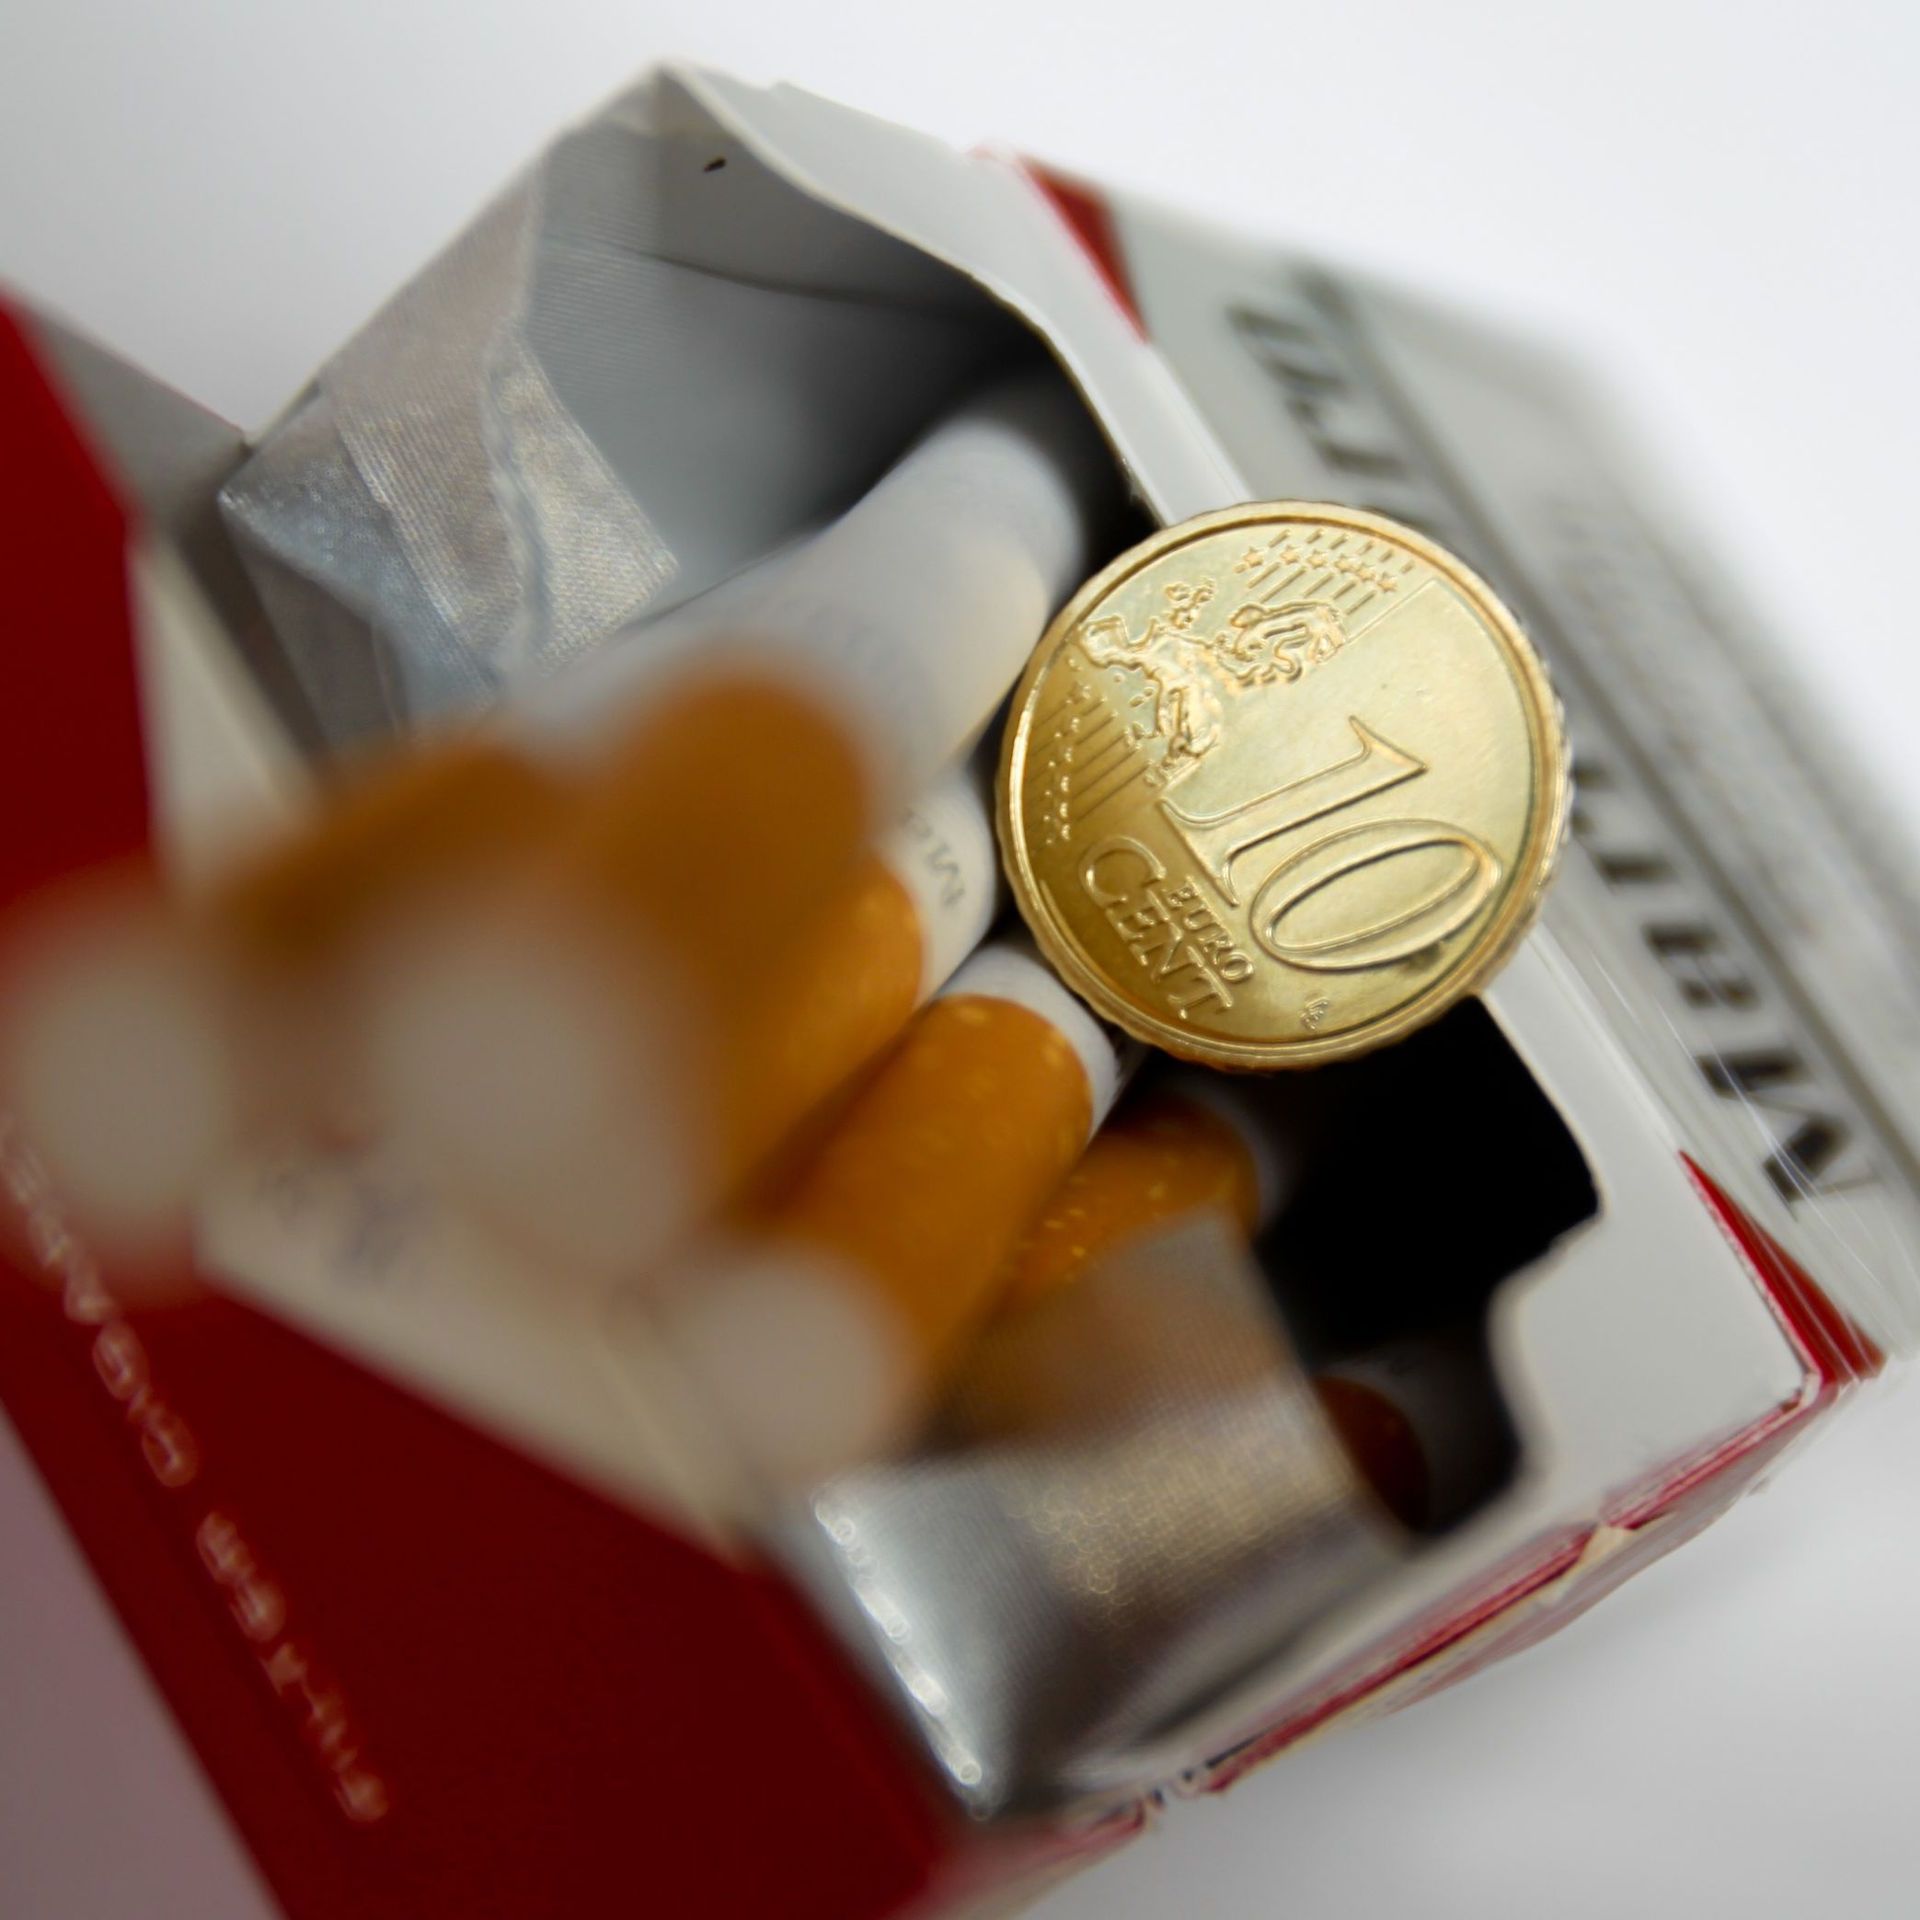 L'augmentation du prix du tabac a un effet quasi arithmétique sur la  consommation »